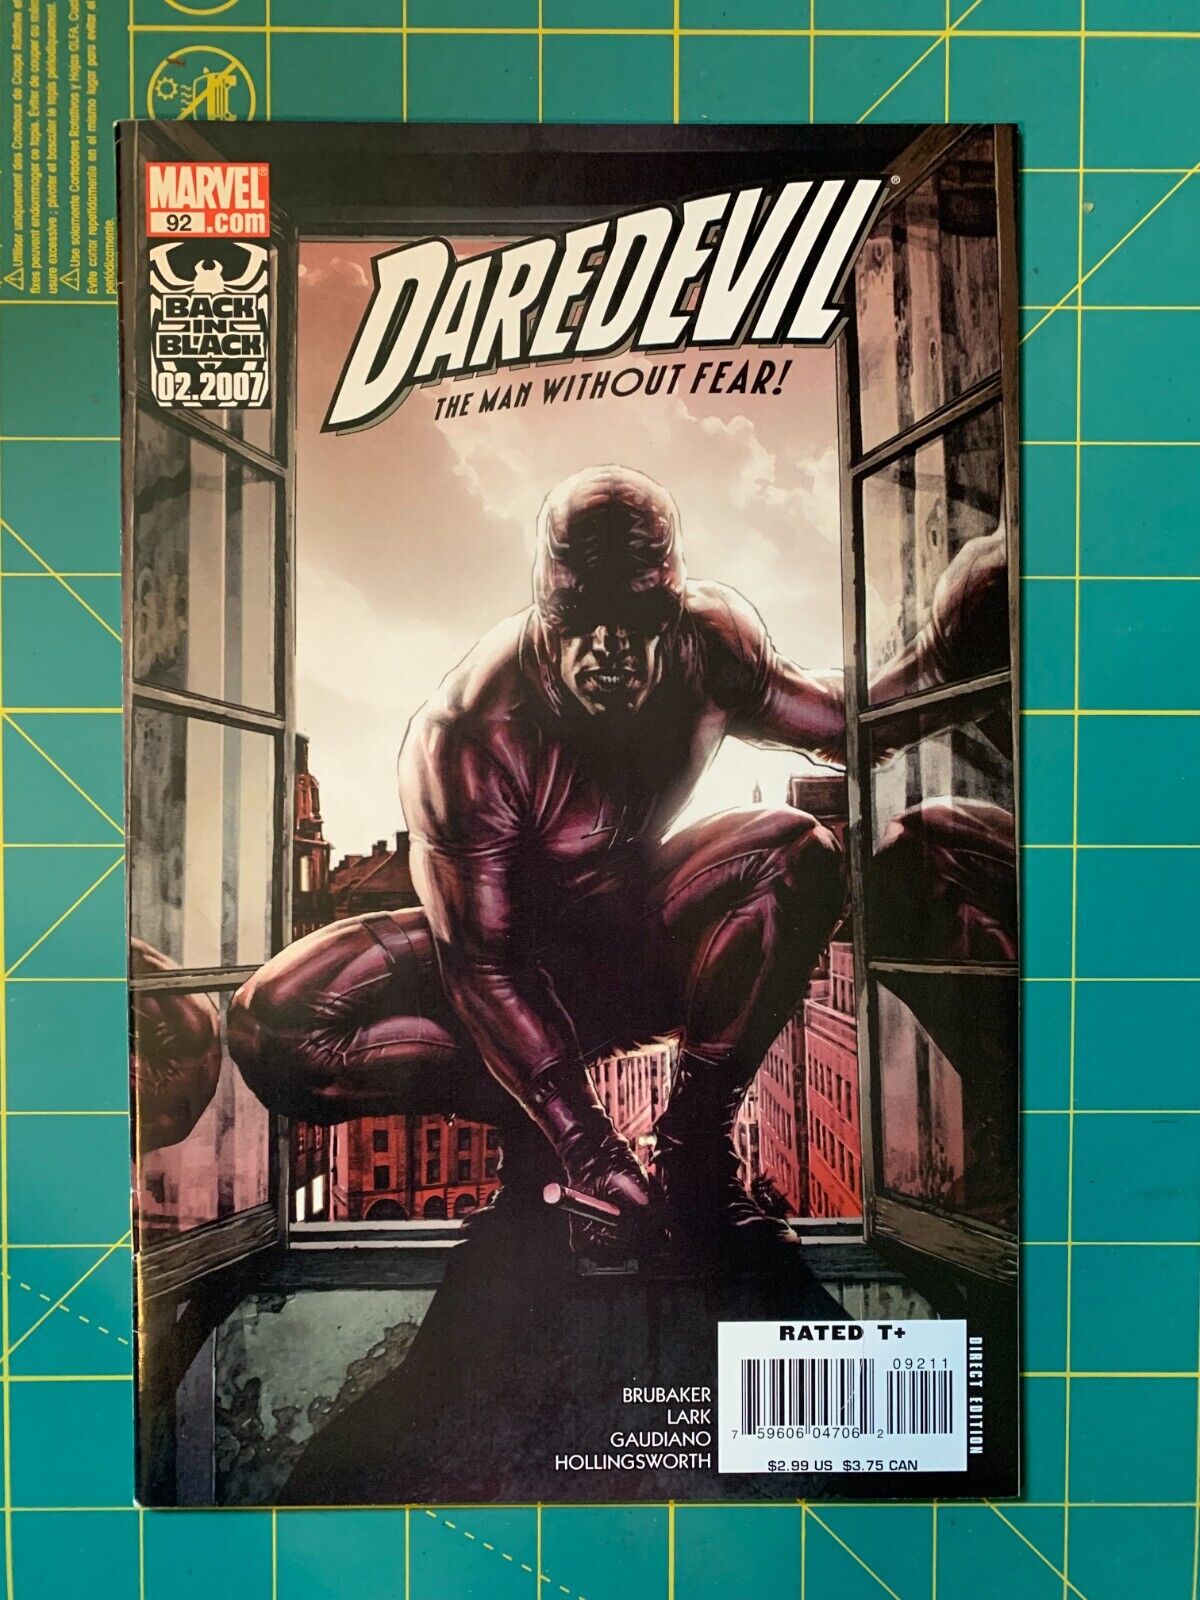 Daredevil #92 - Feb 2007 - Vol.2 - 8.0 VF